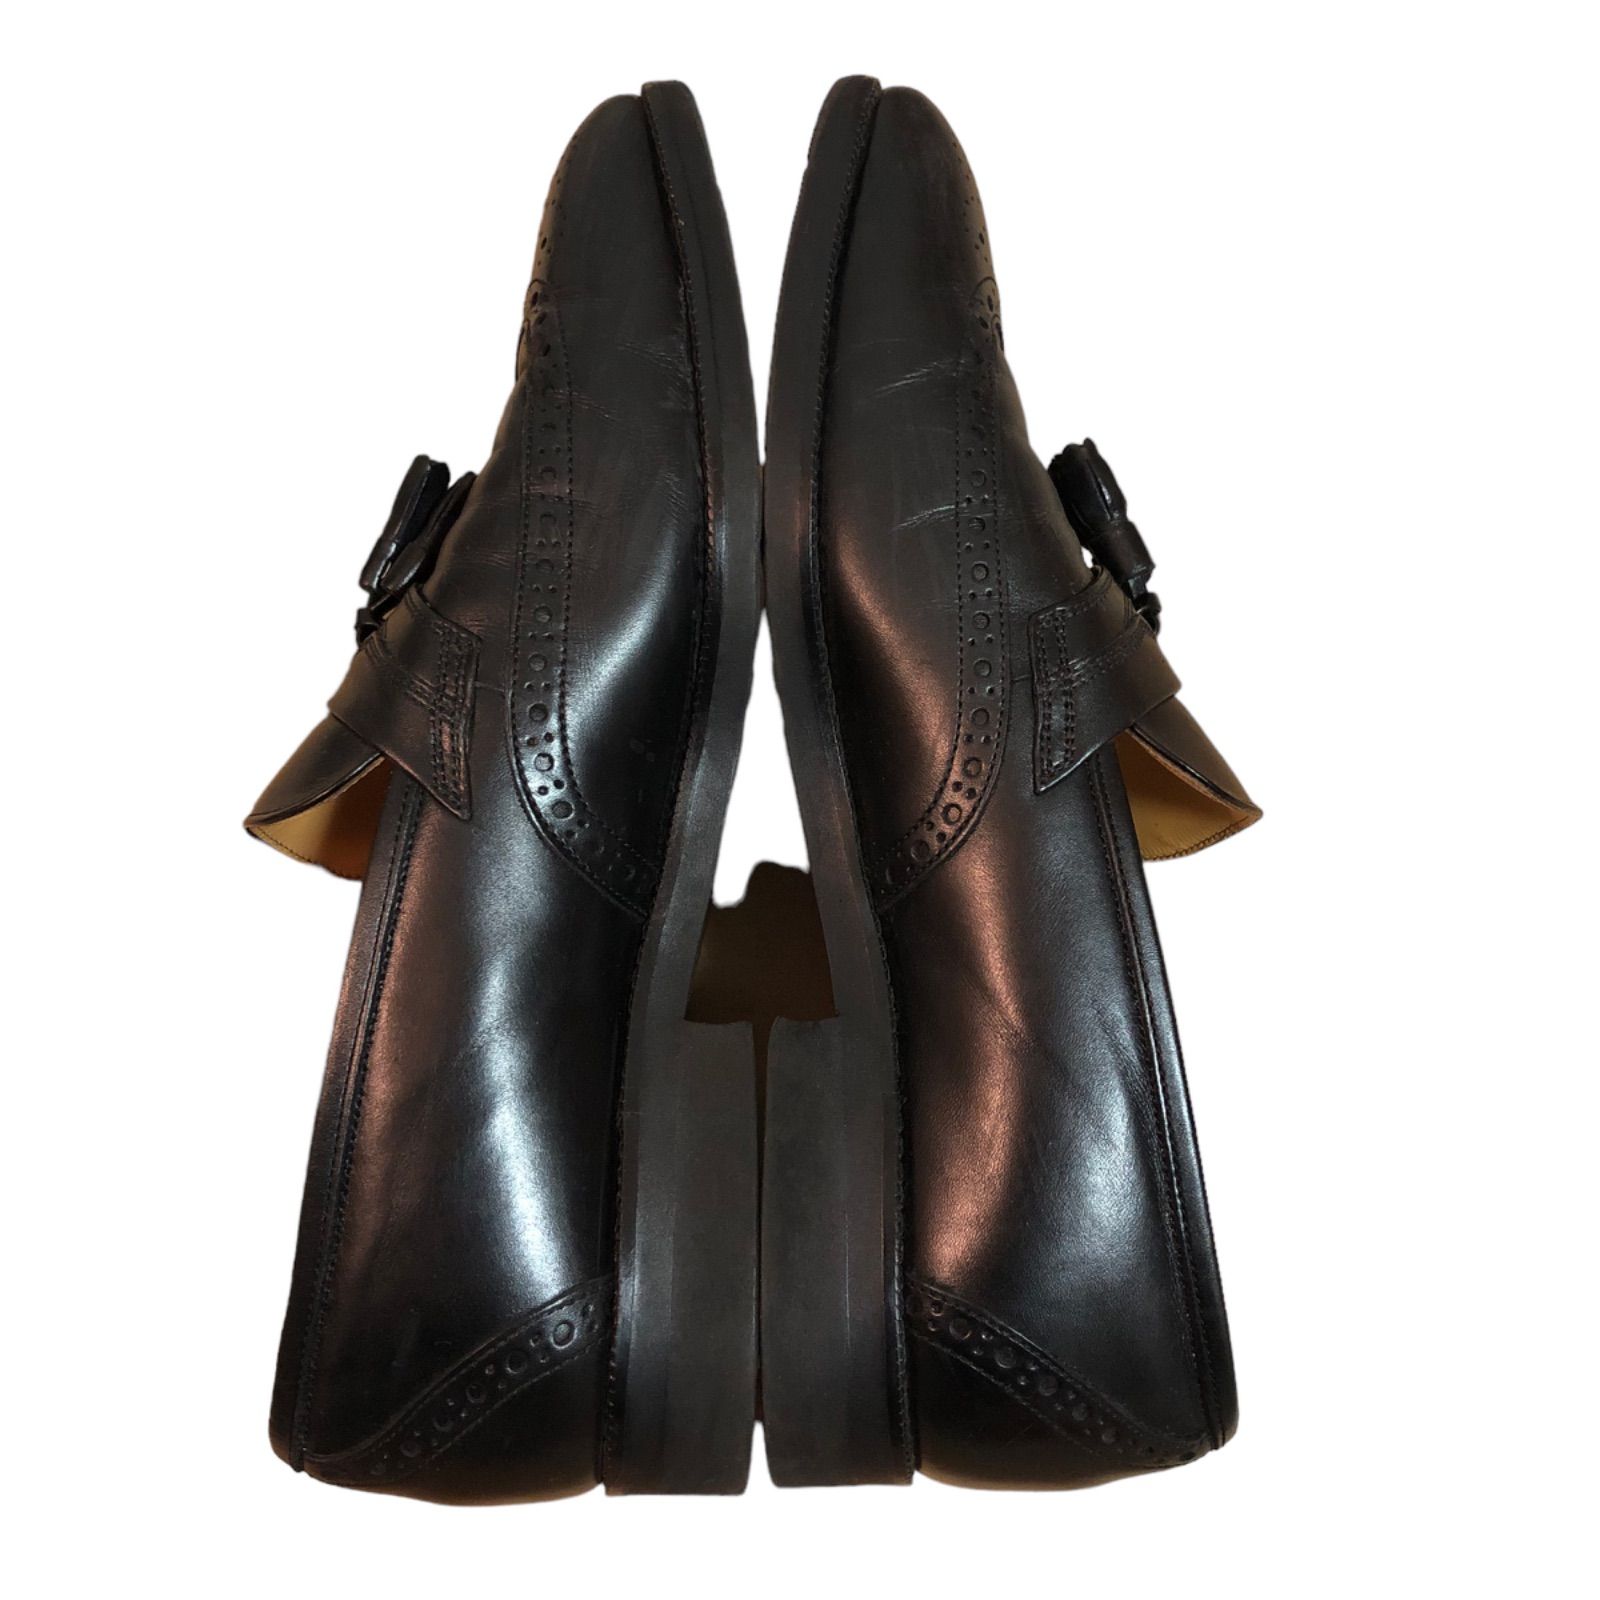 バーバリー 革靴 タッセル レザー ウイングチップ ローファー ドレスシューズ19300円でいかがでしょうか